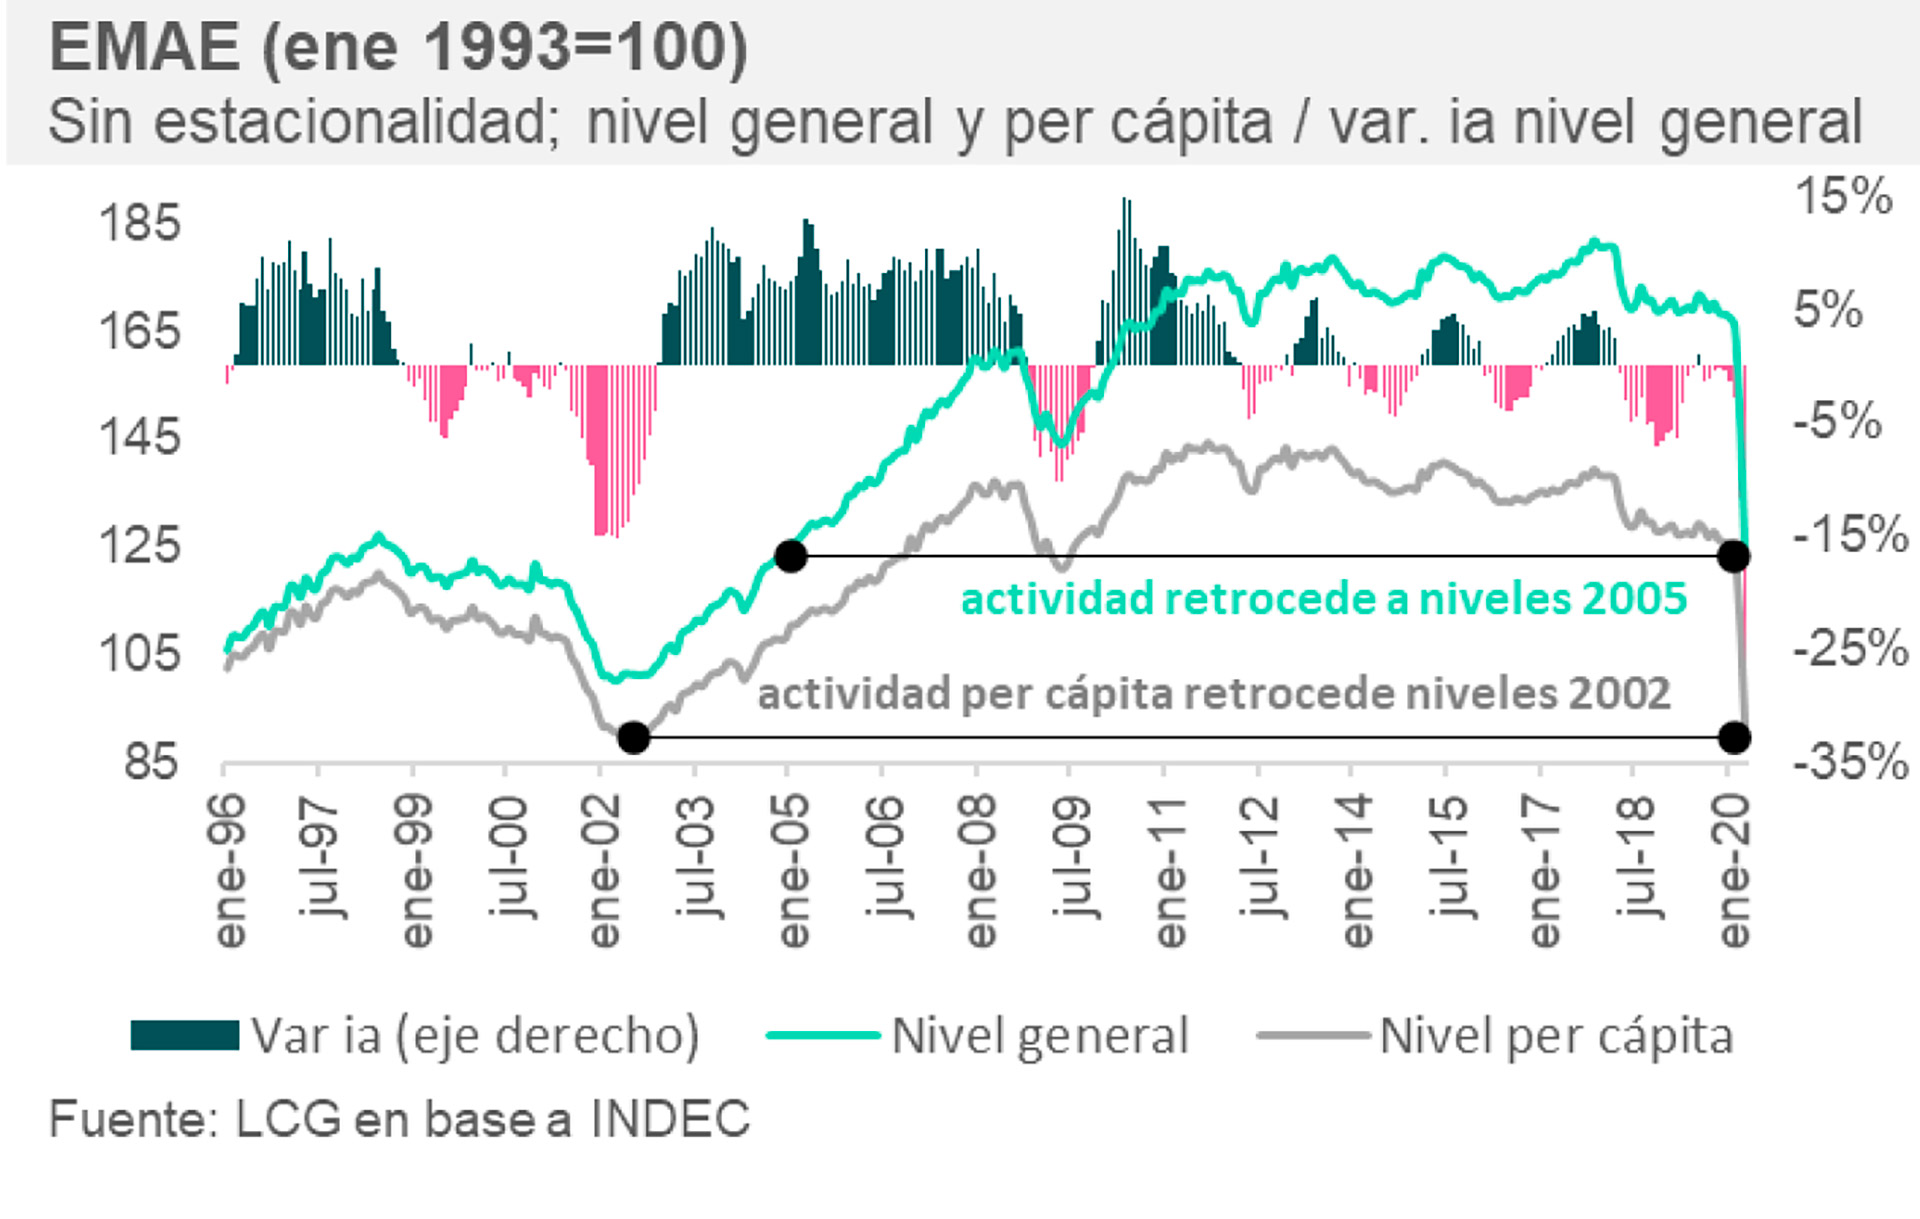 La fuerte volatilidad de la economía argentina en las últimas décadas, según el EMAE
Fuente: LCG